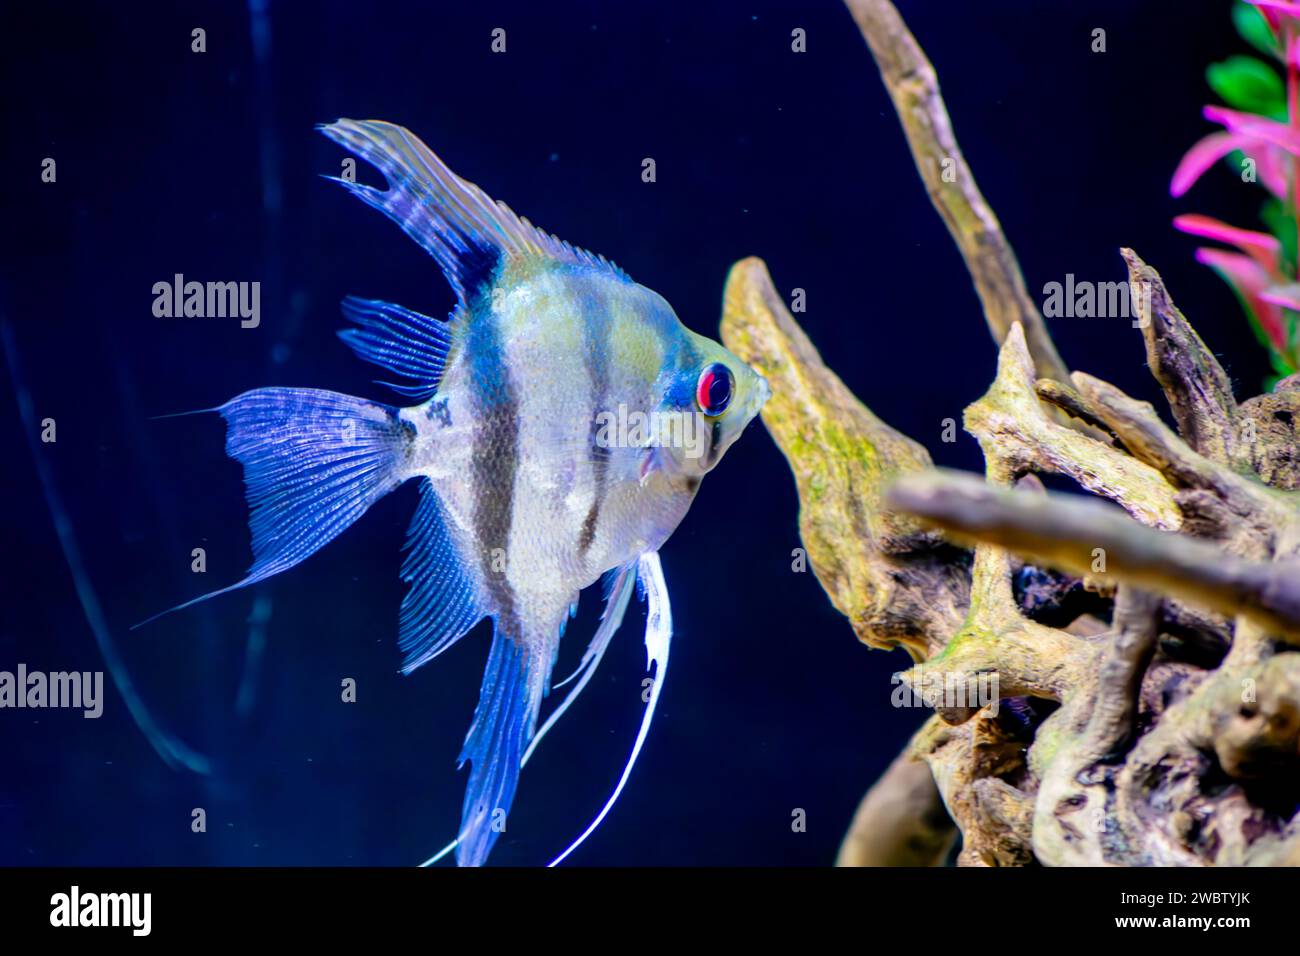 Closeup of an ornamental aquarium fish Scalaria or angelfish Pterophyllum escalare Stock Photo